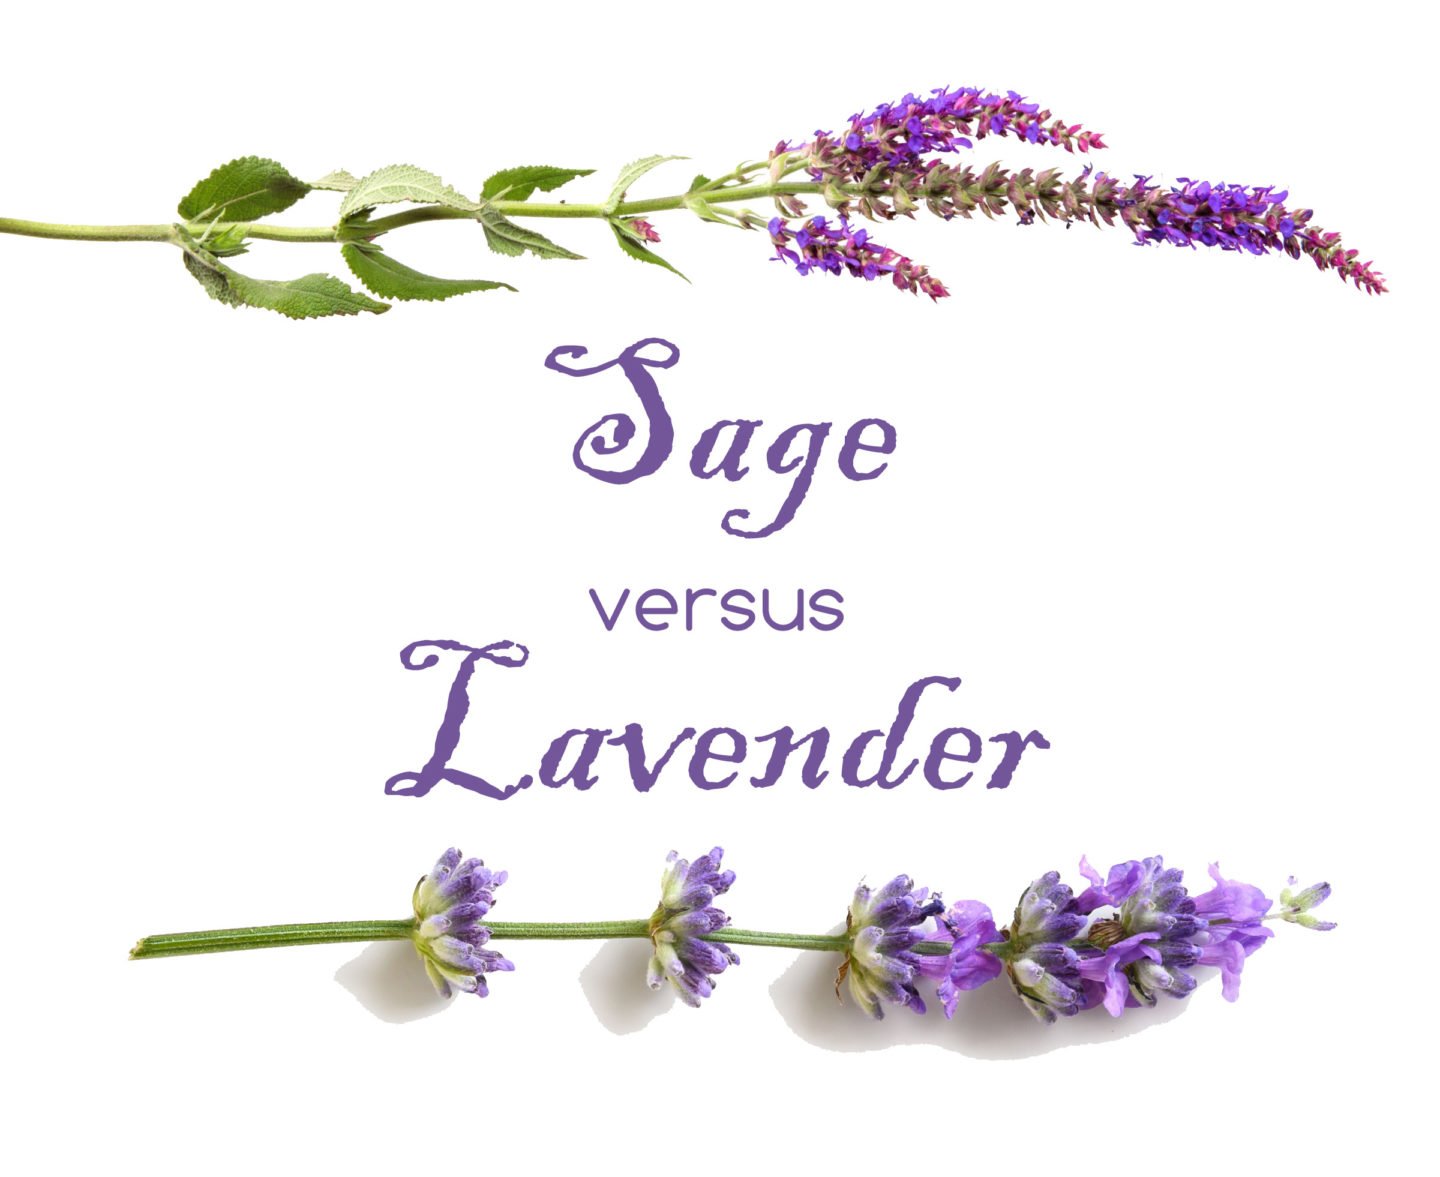 sage versus lavender flowers